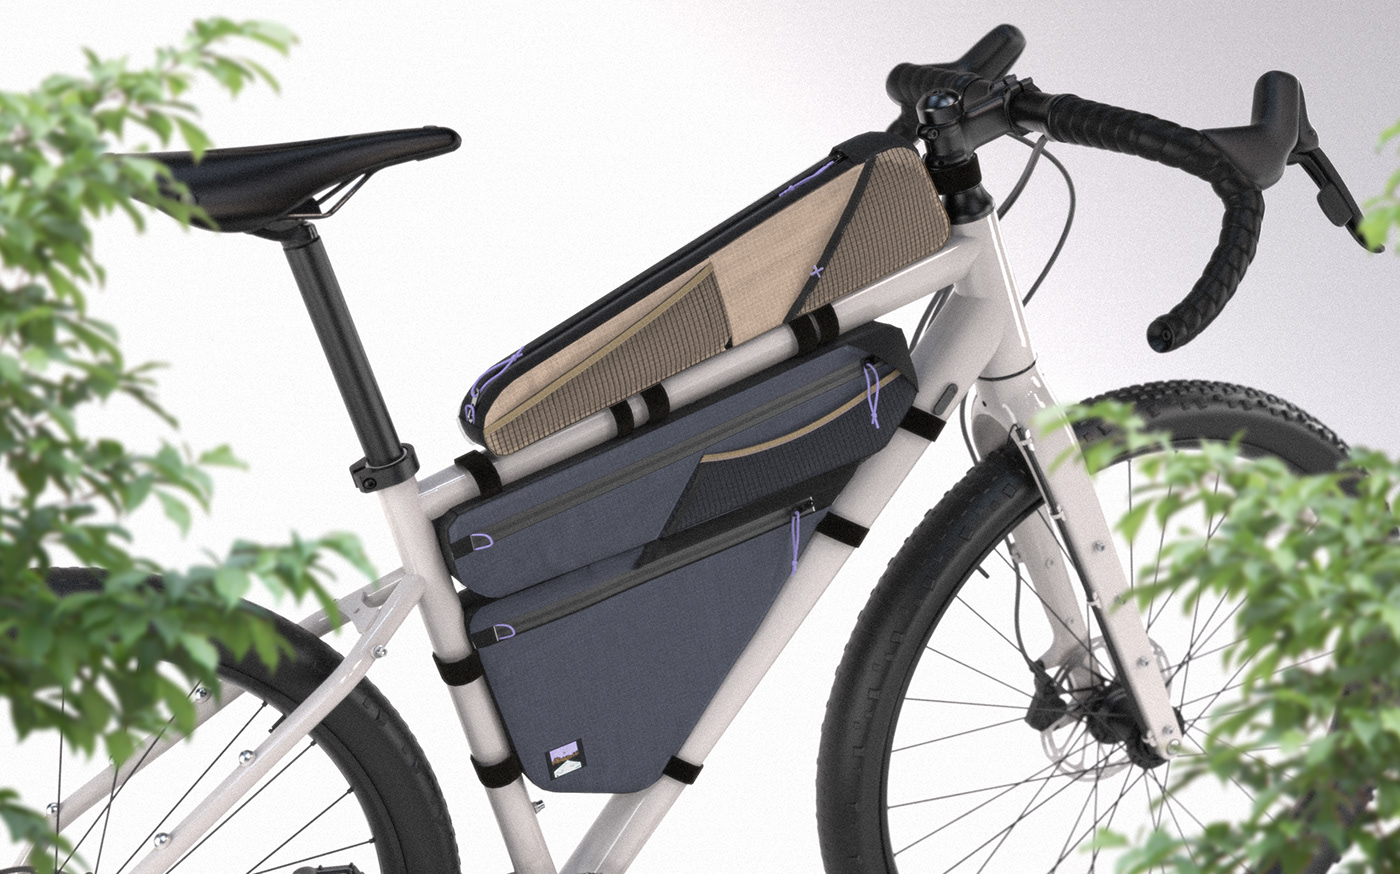 Bike bikepacking bag industrial design  concept design product Render 3D sketch